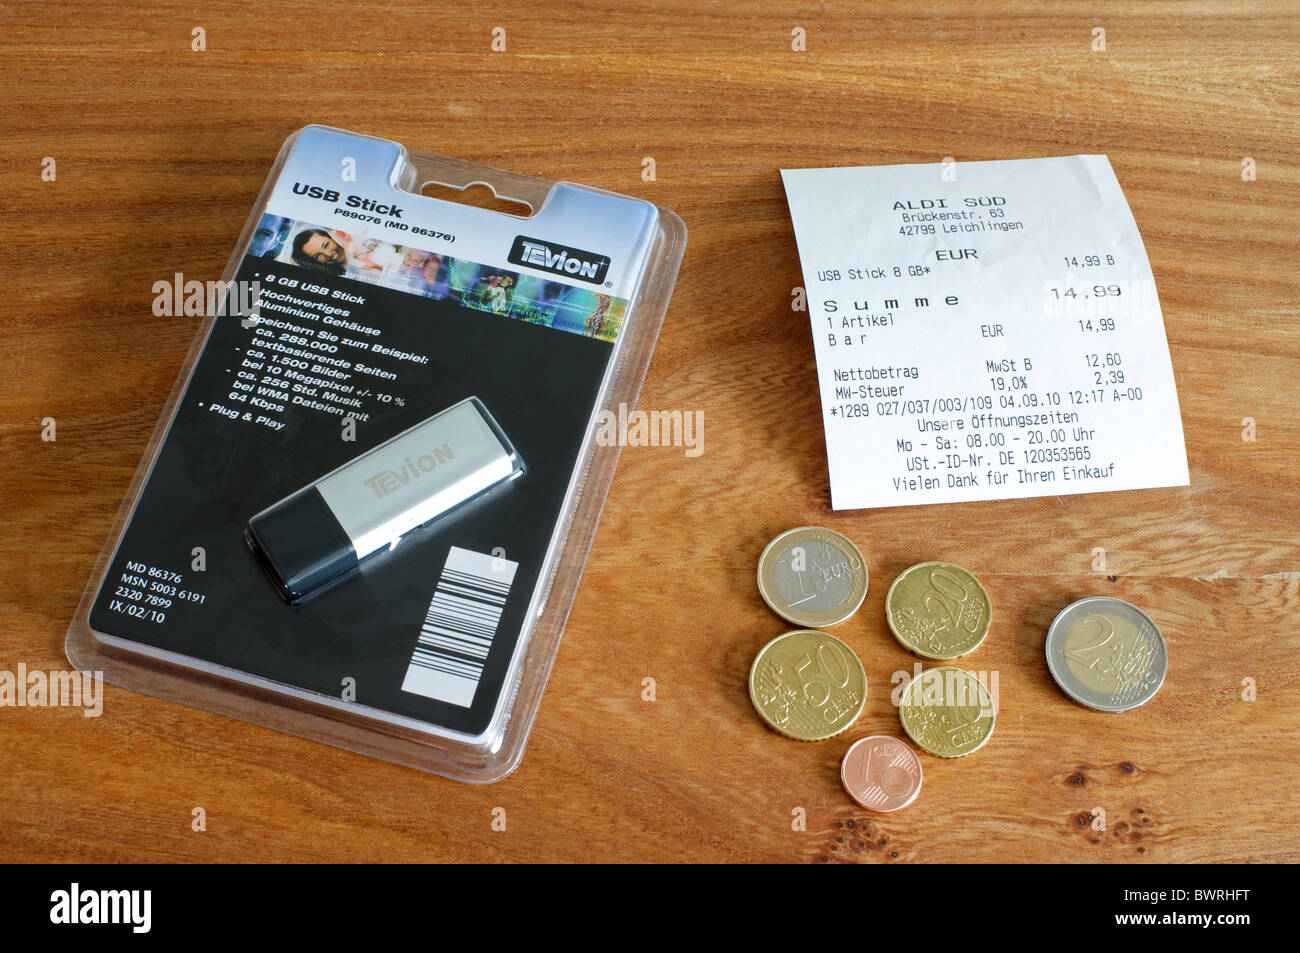 Tevion USB-Stick von Aldi Supermarkt in Deutschland gebracht  Stockfotografie - Alamy